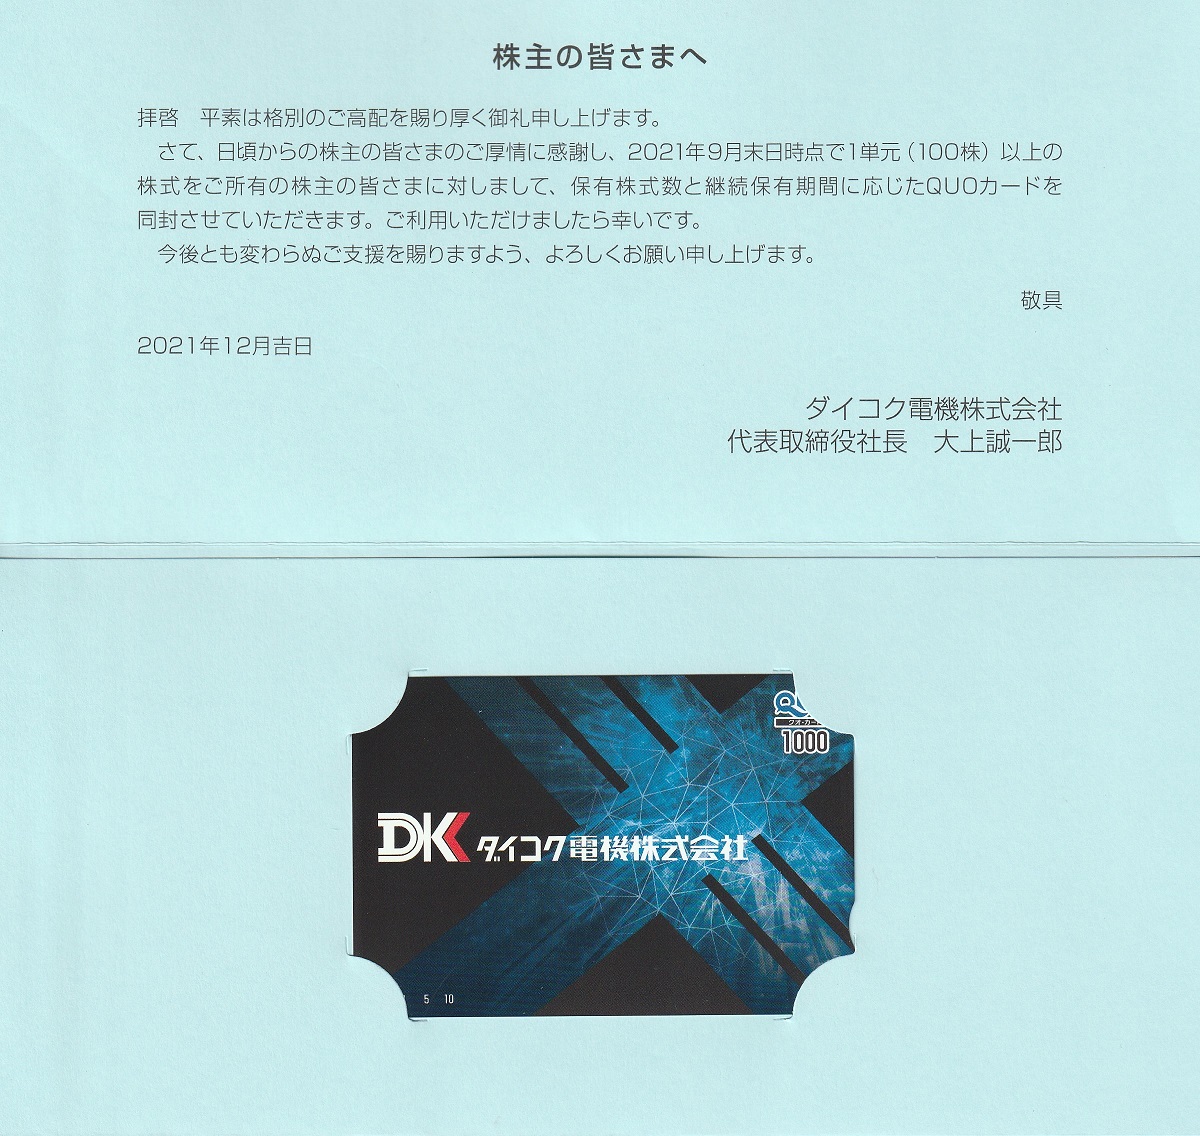 【9月優待】ダイコク電機株式会社からQUOカードが届きました